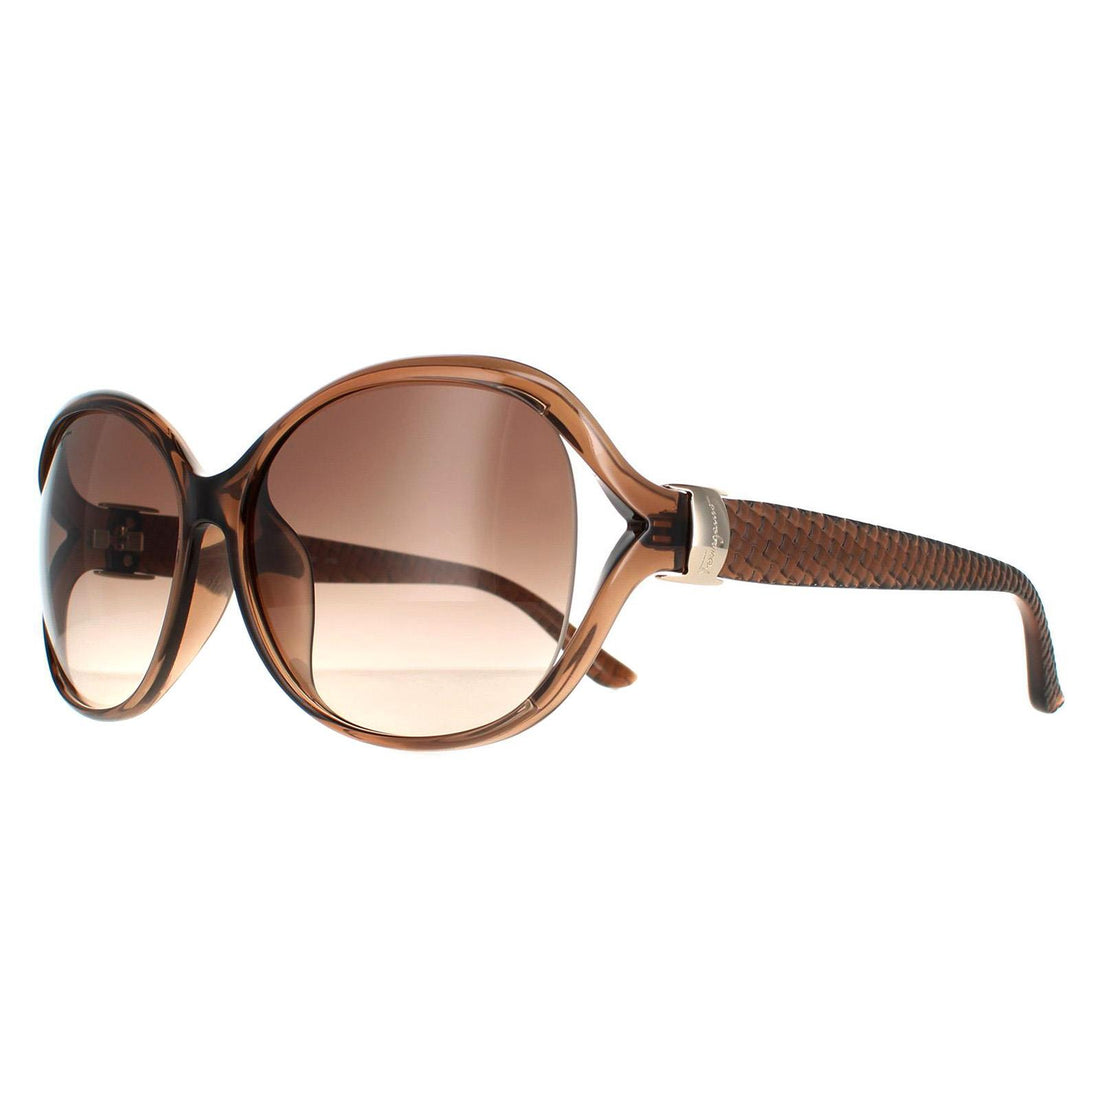 Salvatore Ferragamo Sunglasses SF770SA 213 Light Brown Brown Gradient